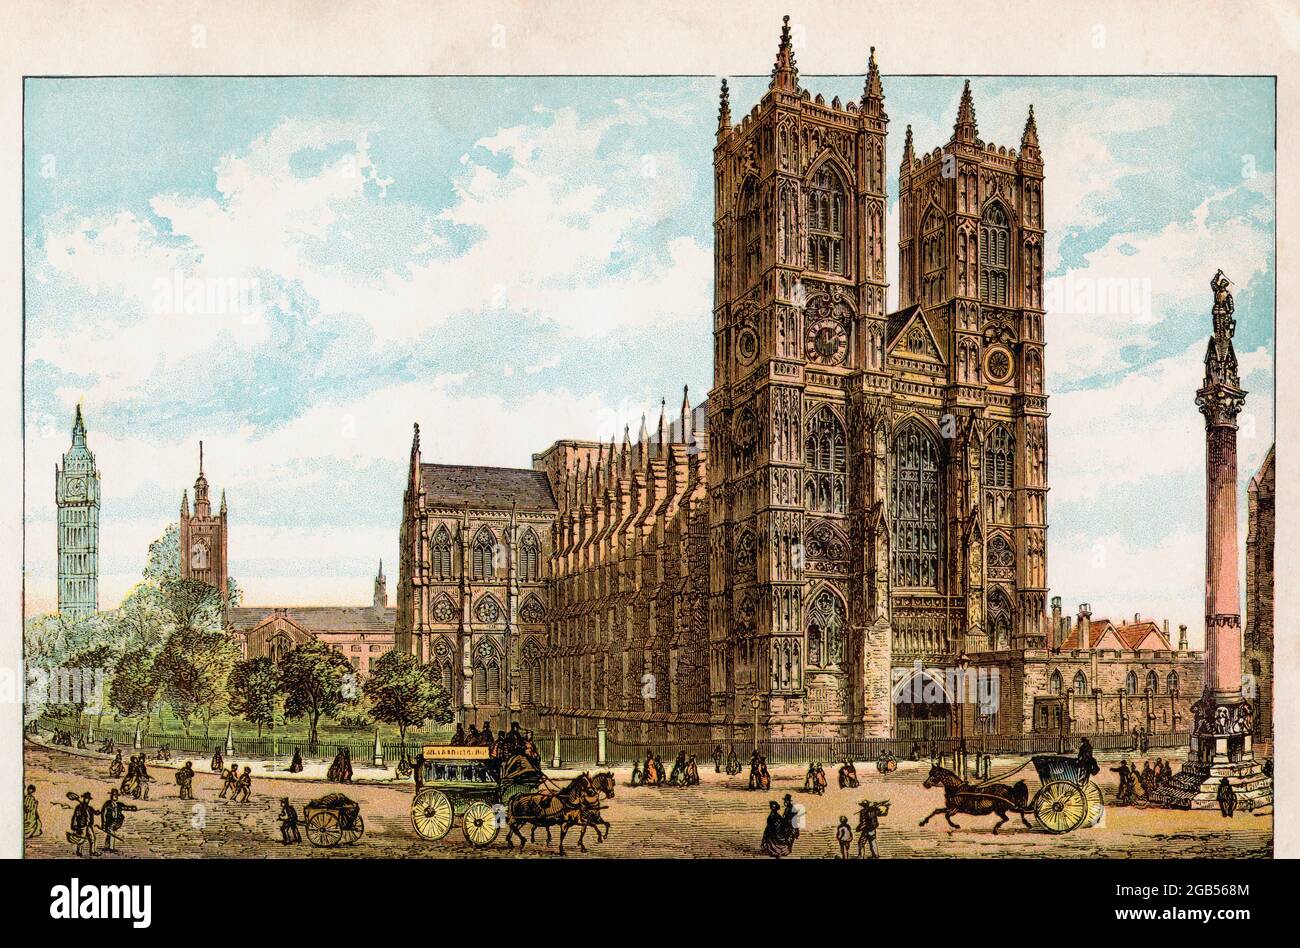 Abbazia di Westminster, città di Westminster, Londra, Inghilterra, visto qui nel 19 ° secolo. Dalla pittoresca Inghilterra, i suoi monumenti storici e i luoghi storici, pubblicato nel 1891. Foto Stock